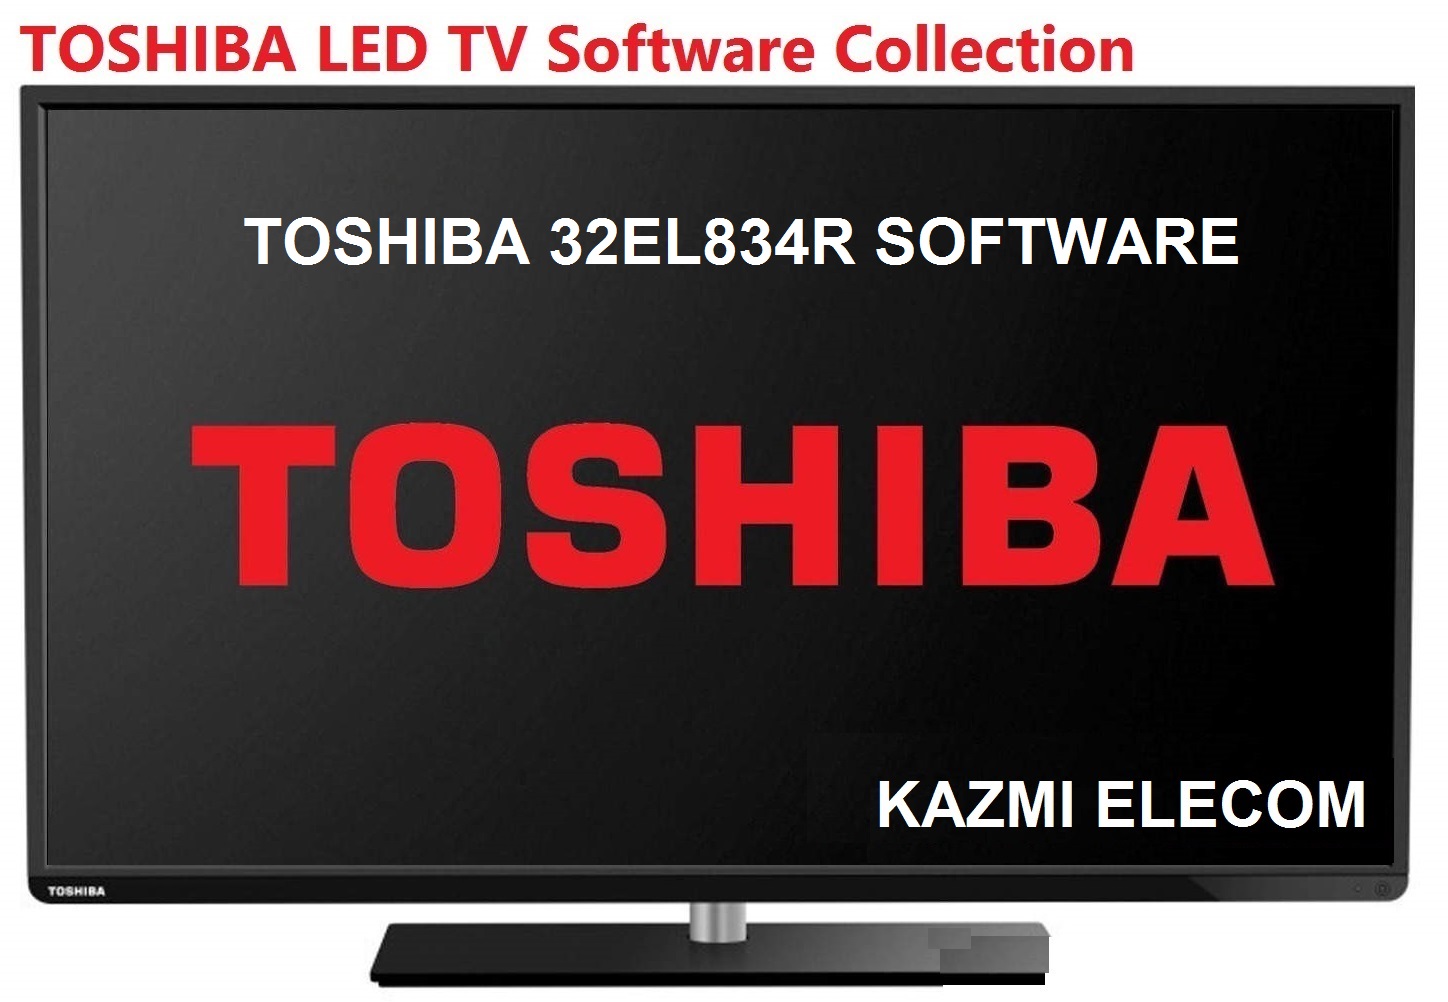 Toshiba 32El834R